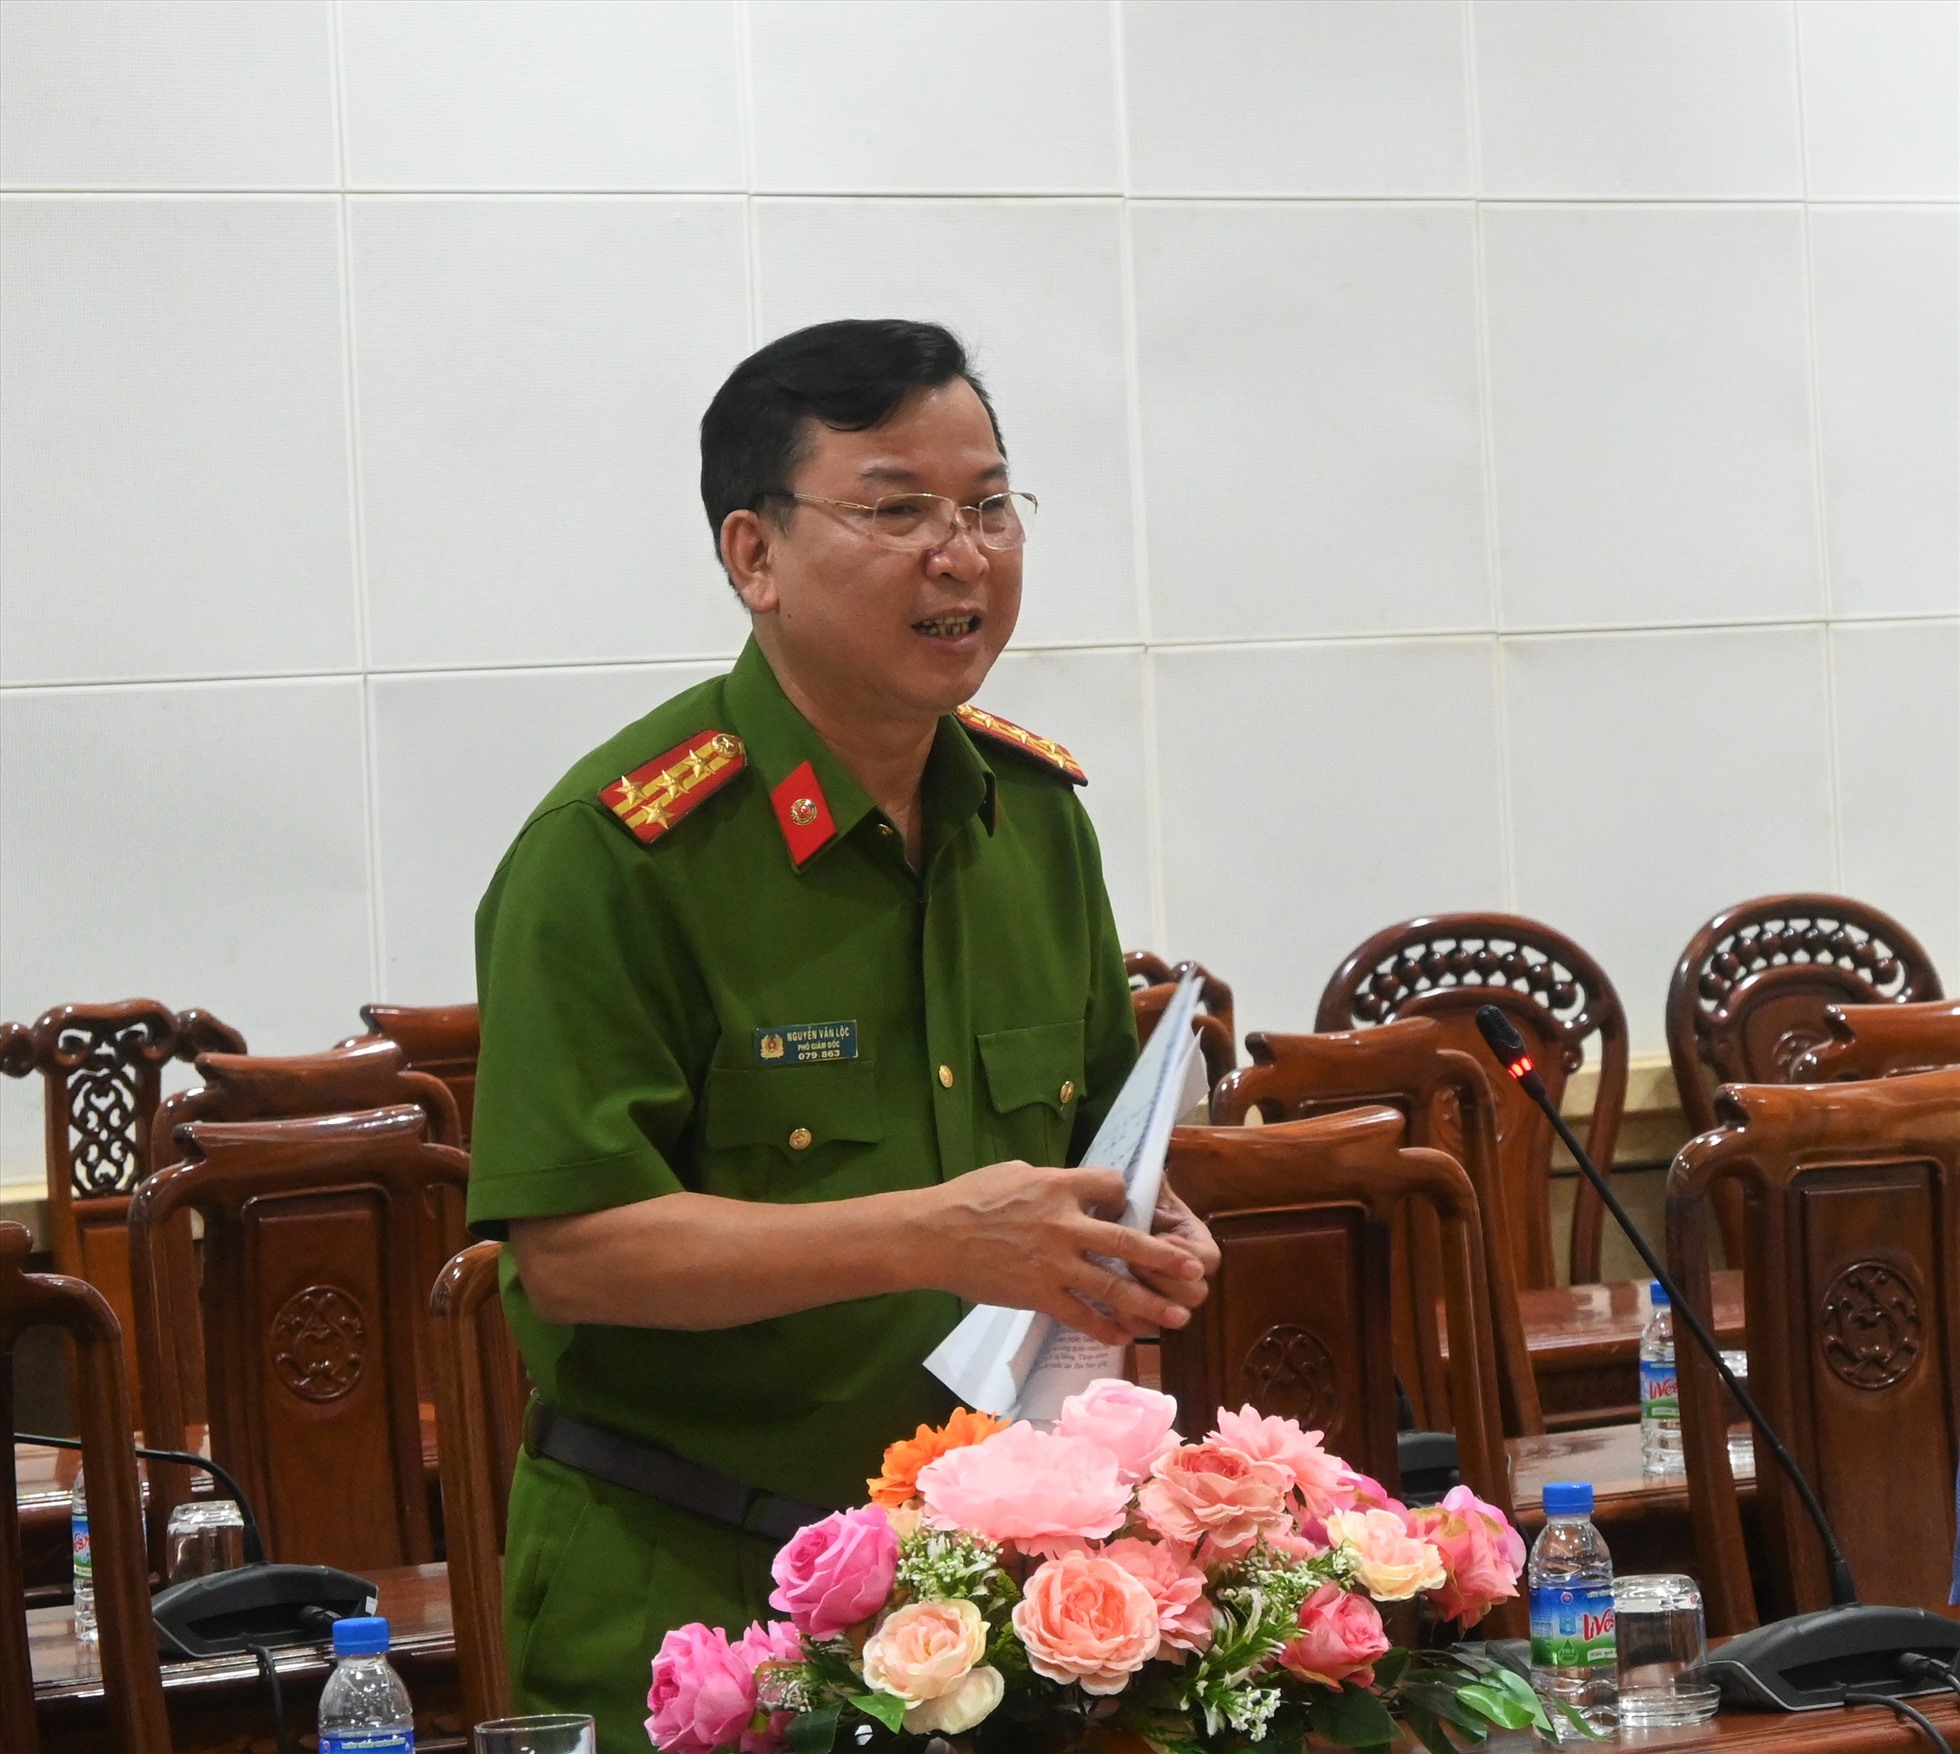 Đại tá Nguyễn Văn Lộc - Phó Giám đốc Công an tỉnh Tiền Giang - phát biểu tại buổi họp báo quý I.2023. Ảnh: Thành Nhân